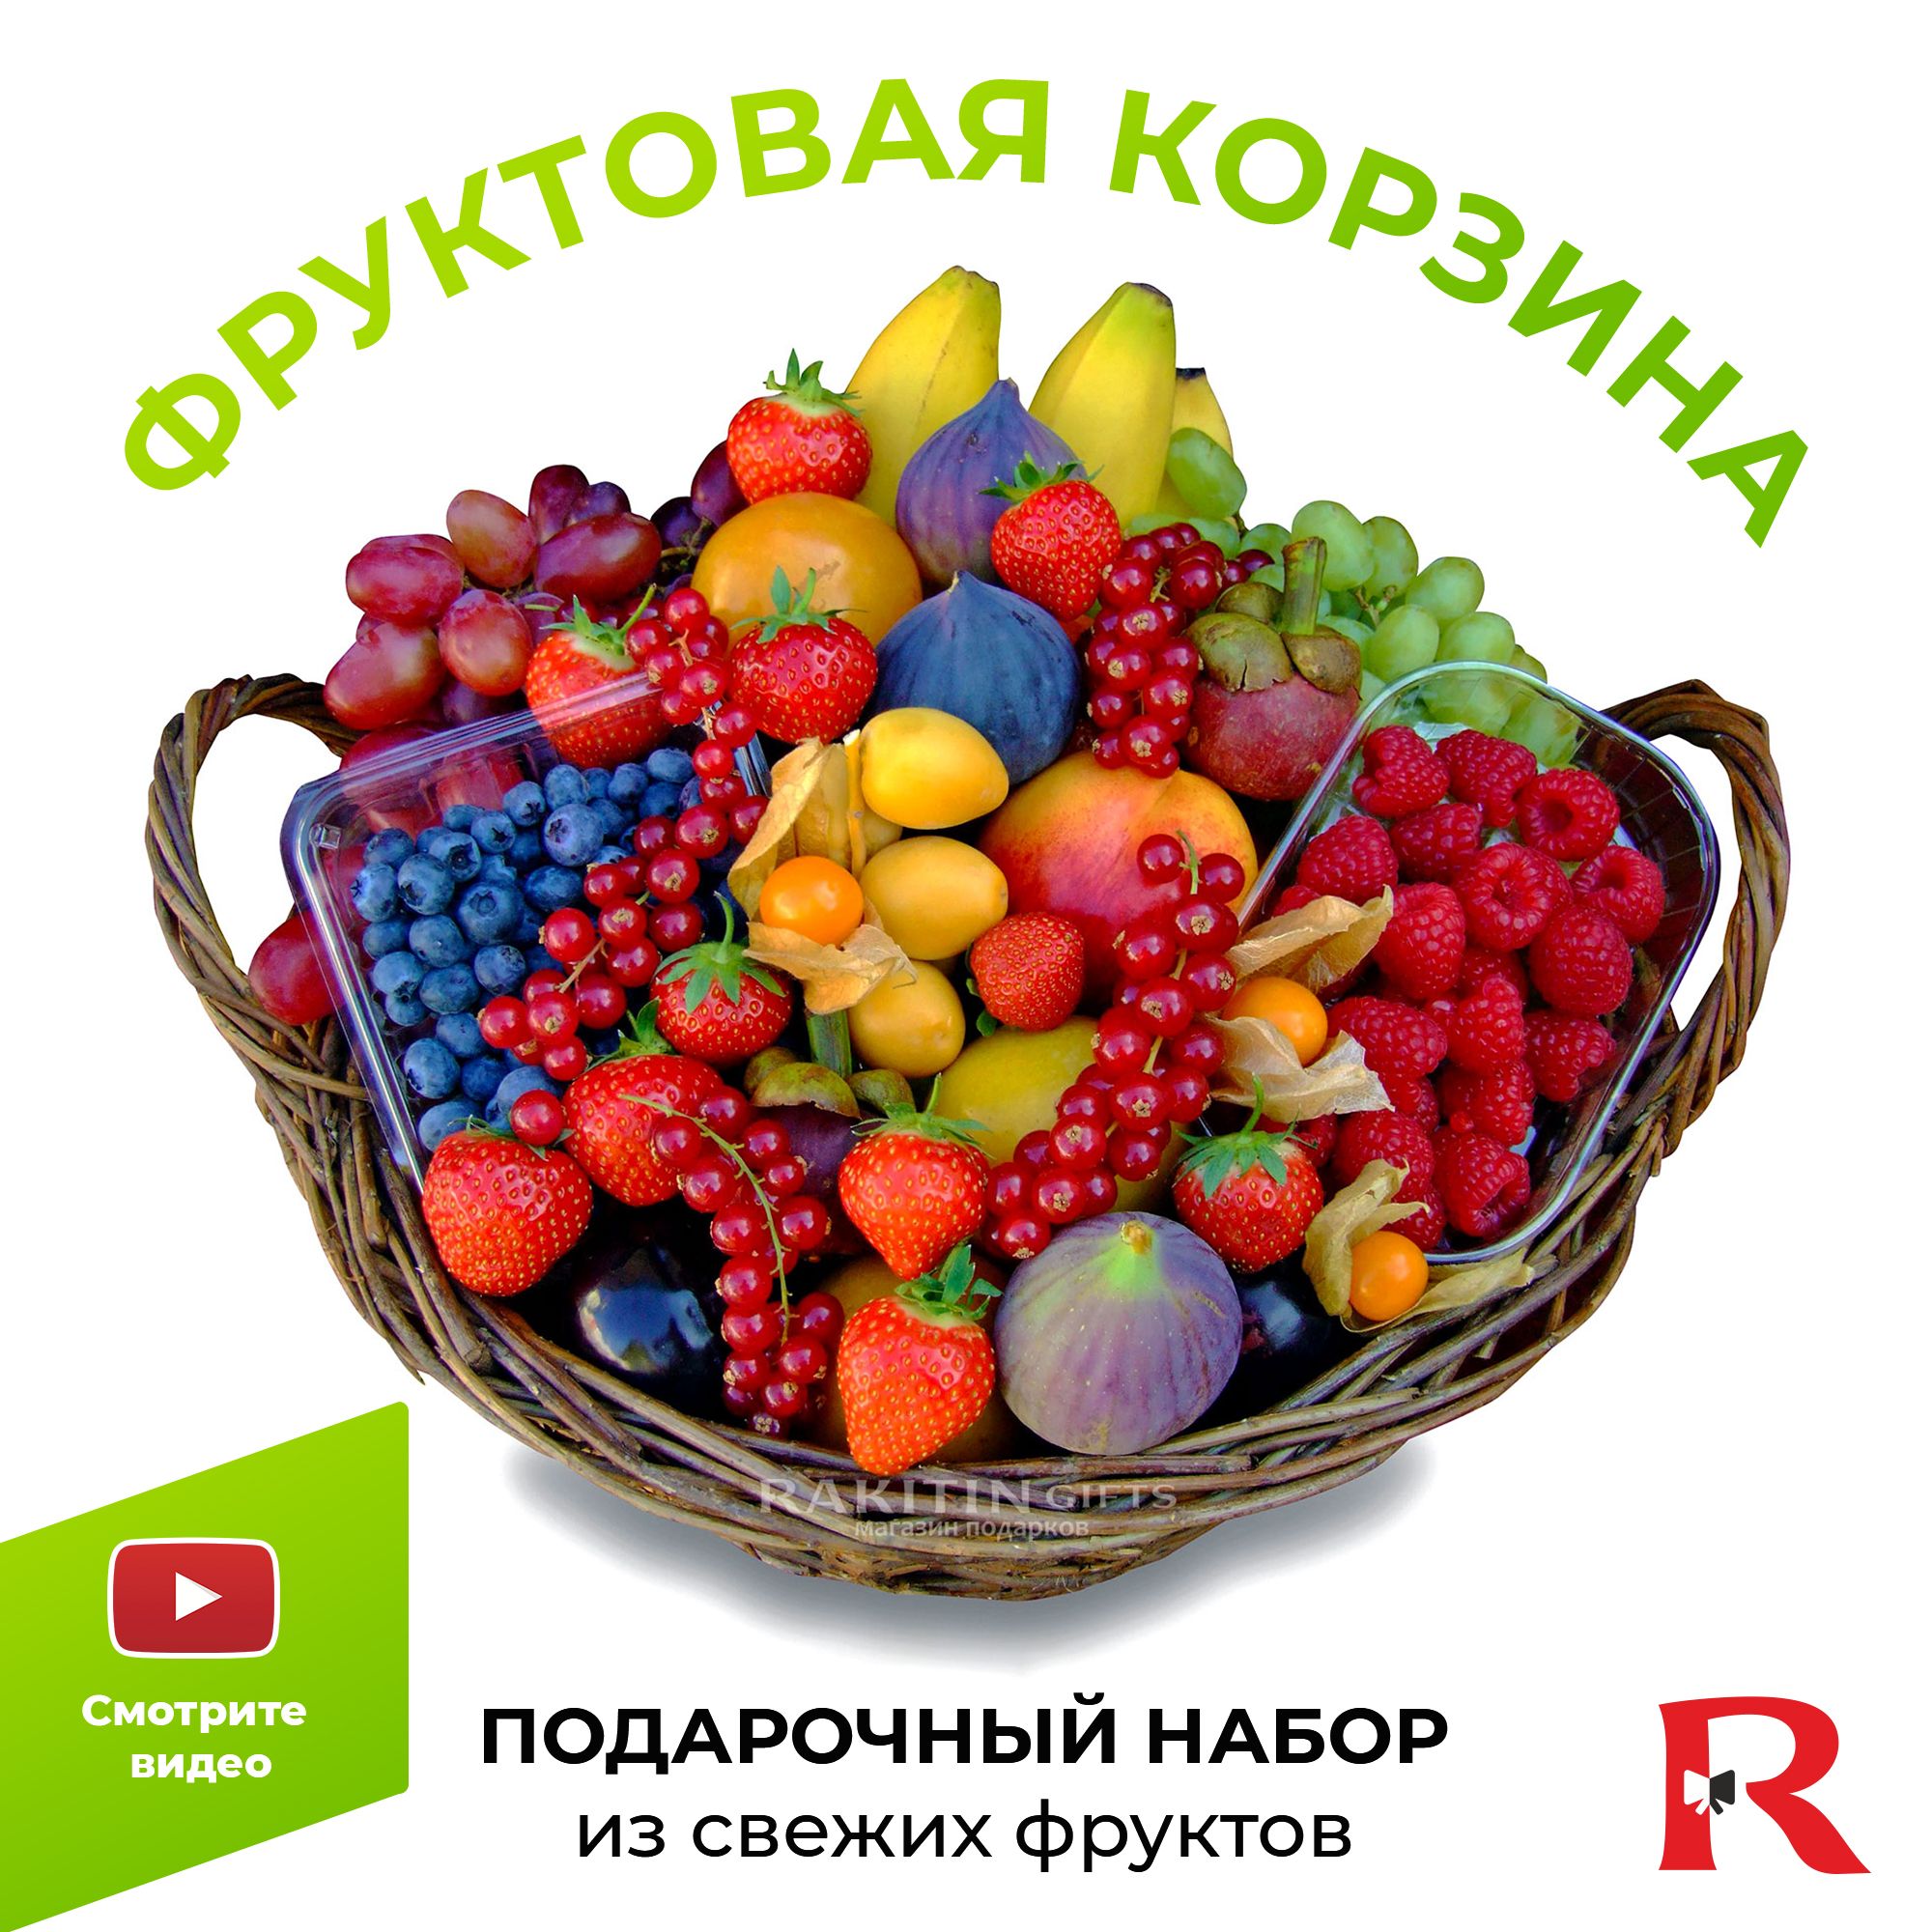 Доставка корзин с фруктами в москве